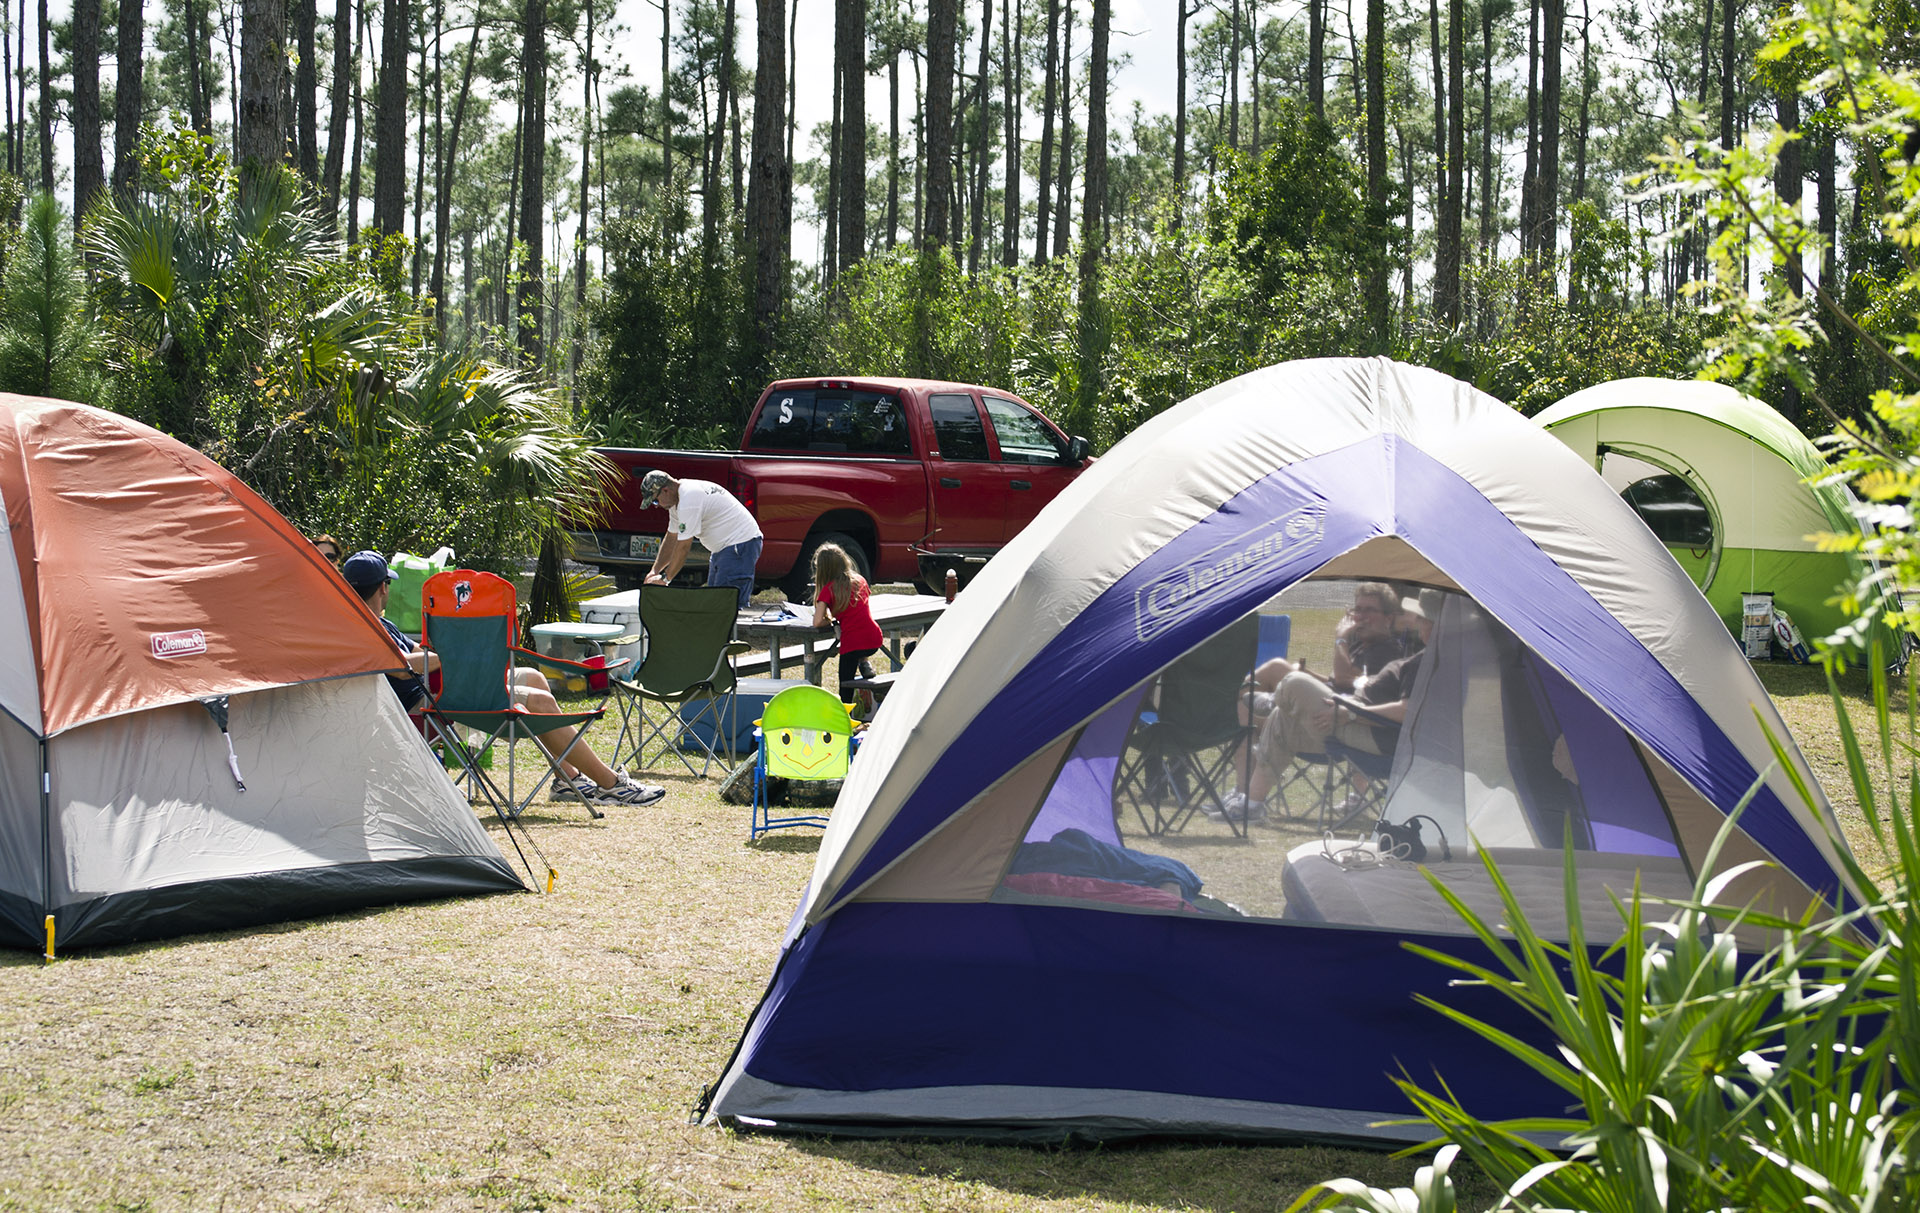 Camping questions. Палатки для кемпинга. Кемпинги в национальных парках. Семейный кемпинг. Палатка Camp.